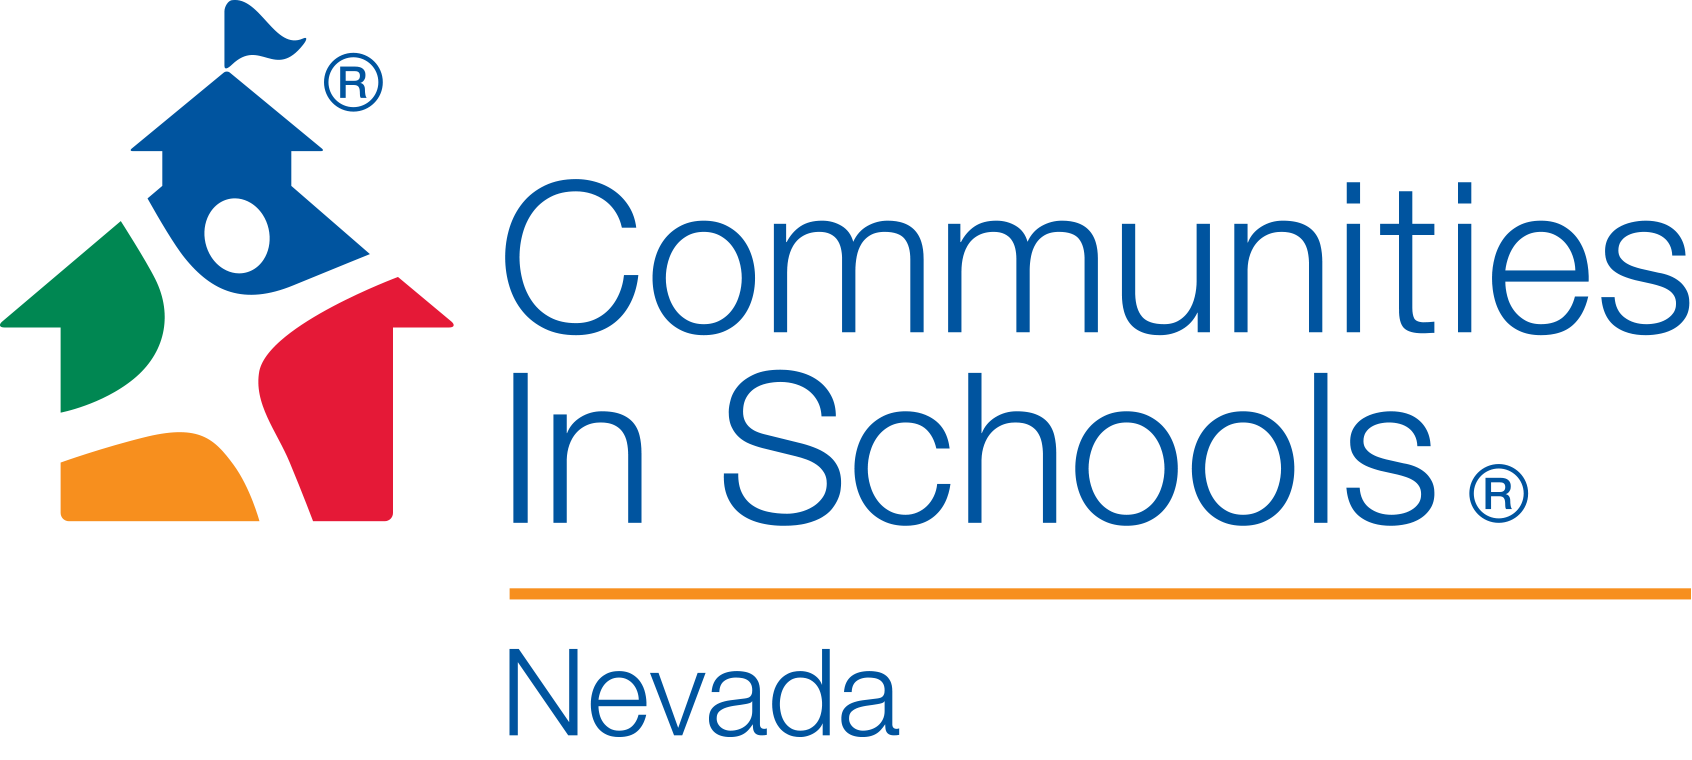 Communities In Schools of Nevada logo